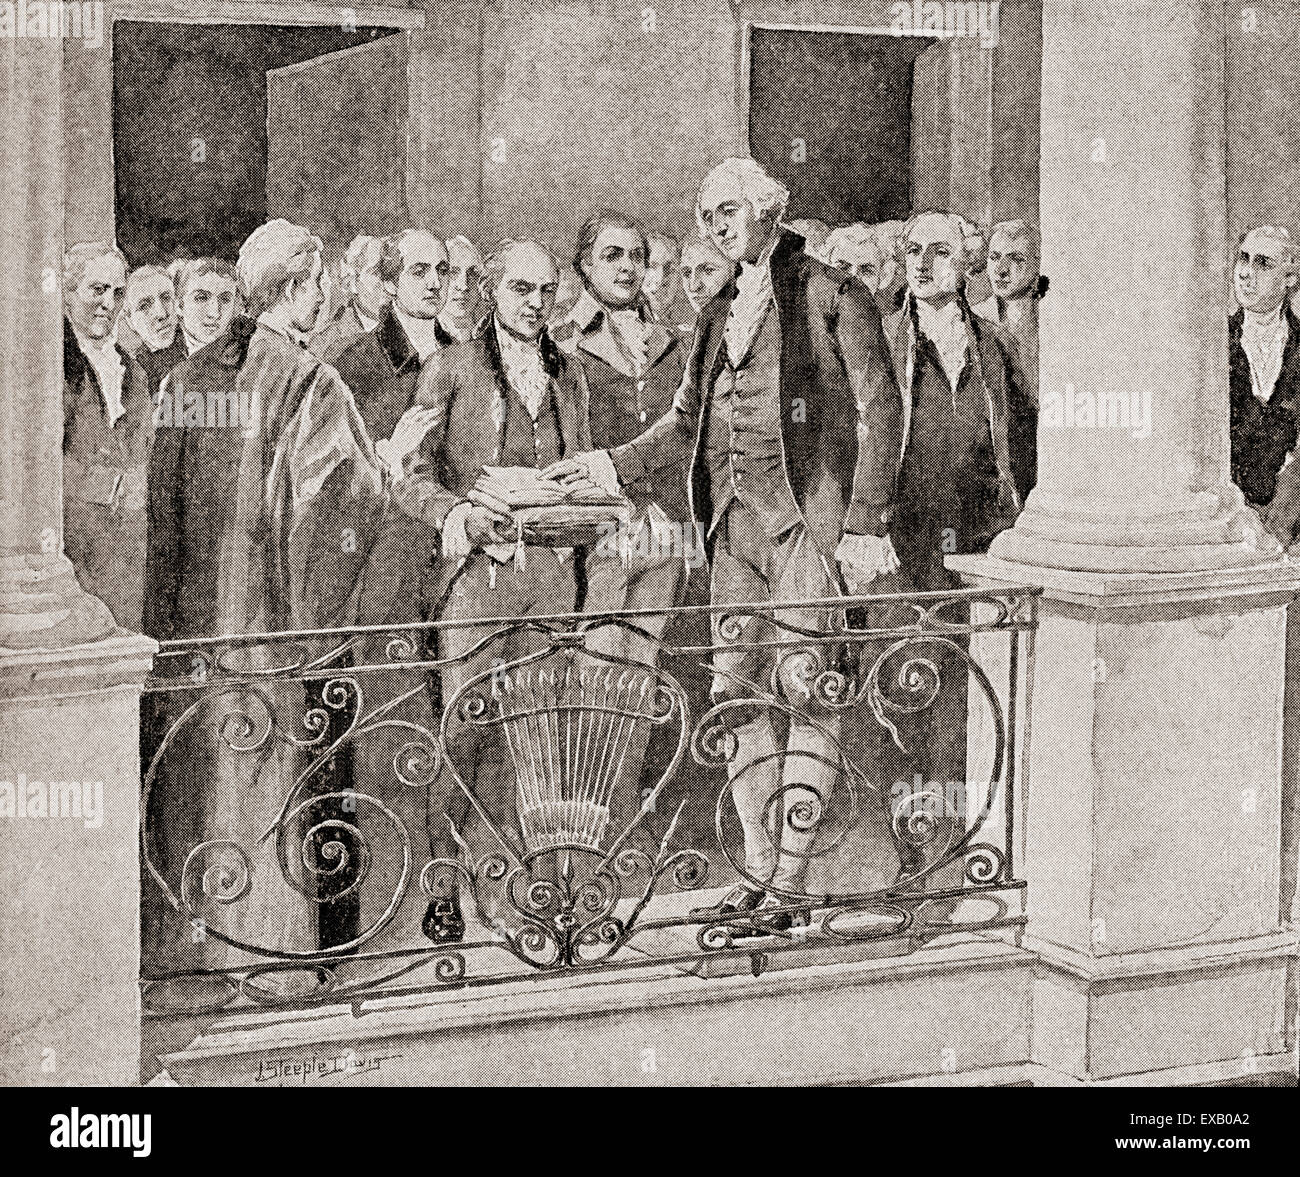 L'inauguration de George Washington, le 30 avril 1789. George Washington, 1732 -1799. Premier président des États-Unis (1789-1797), commandant en chef de l'Armée continentale pendant la guerre d'indépendance américaine, et un des Pères fondateurs des États-Unis. Banque D'Images